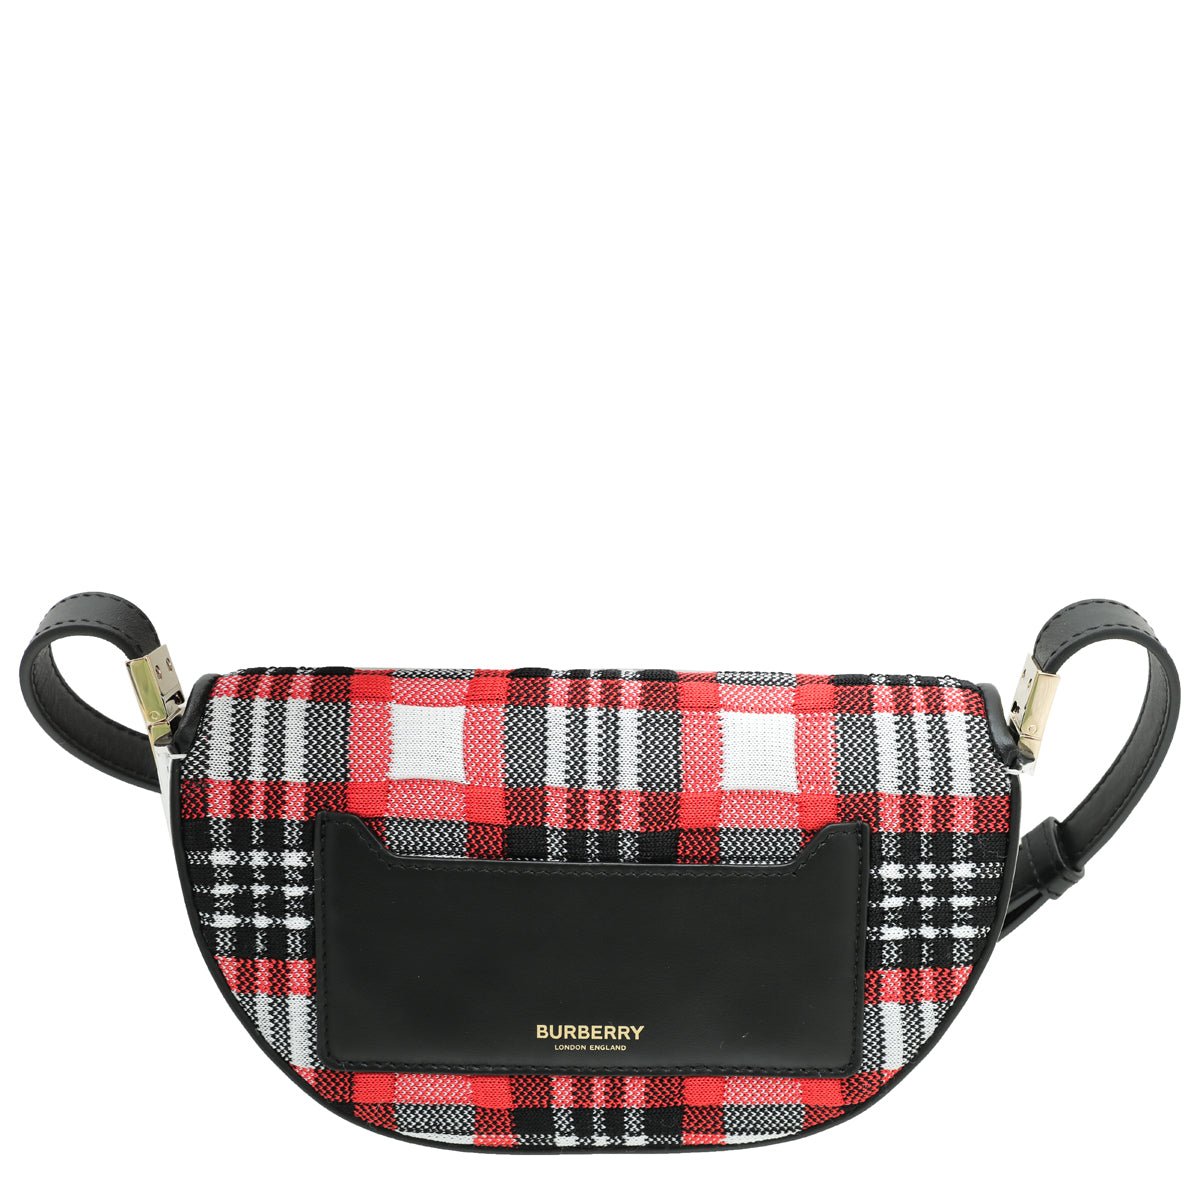 Burberry - Burberry Tricolor Fabric Check Olympia Bag | The Closet